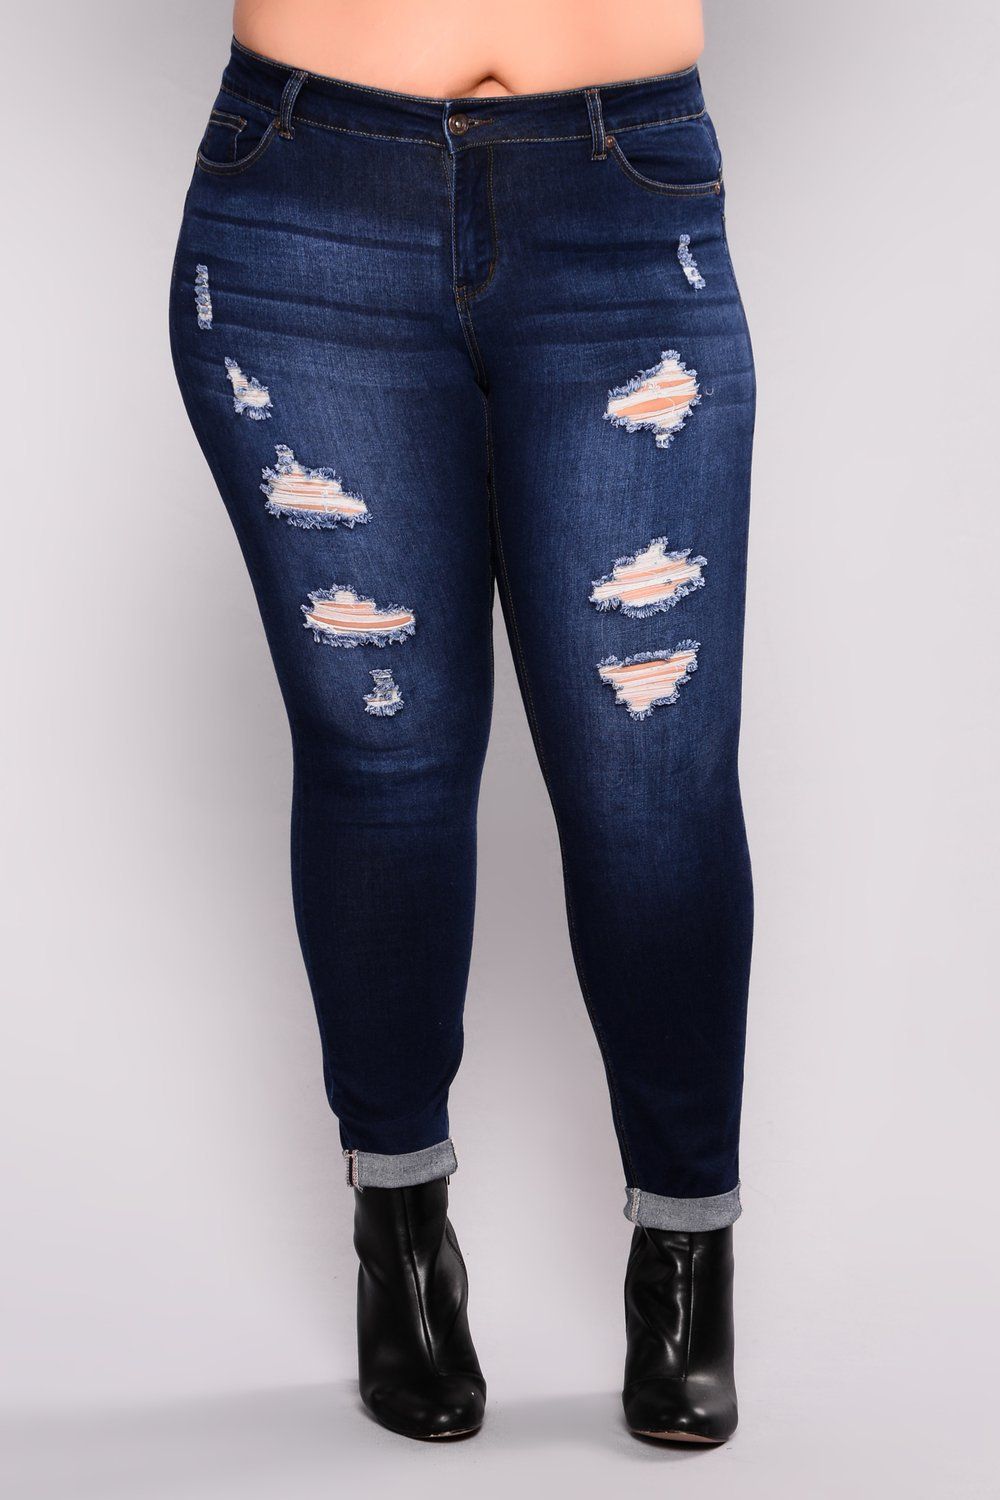 Hot 2018 Nuevas Señoras De La Moda De Mezclilla Estiramiento Para Mujer Ripped Skinny Jeans De Cintura Alta Jeans Denim Para Mujer De 18,8 € | DHgate